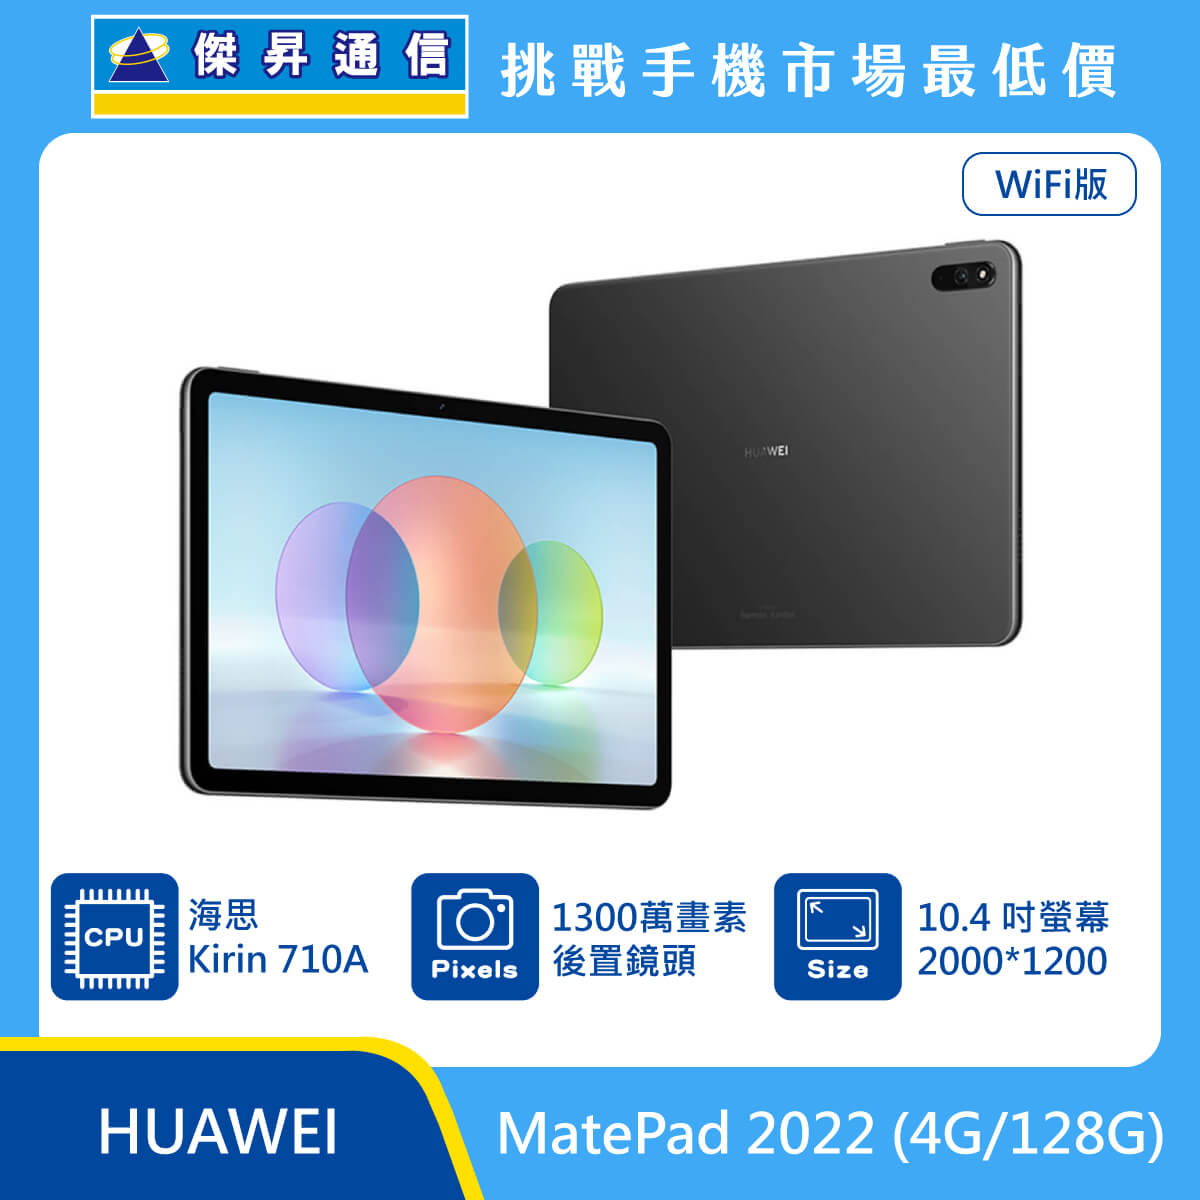 HUAWEI 平板 MatePad 2022 (4G/128G)